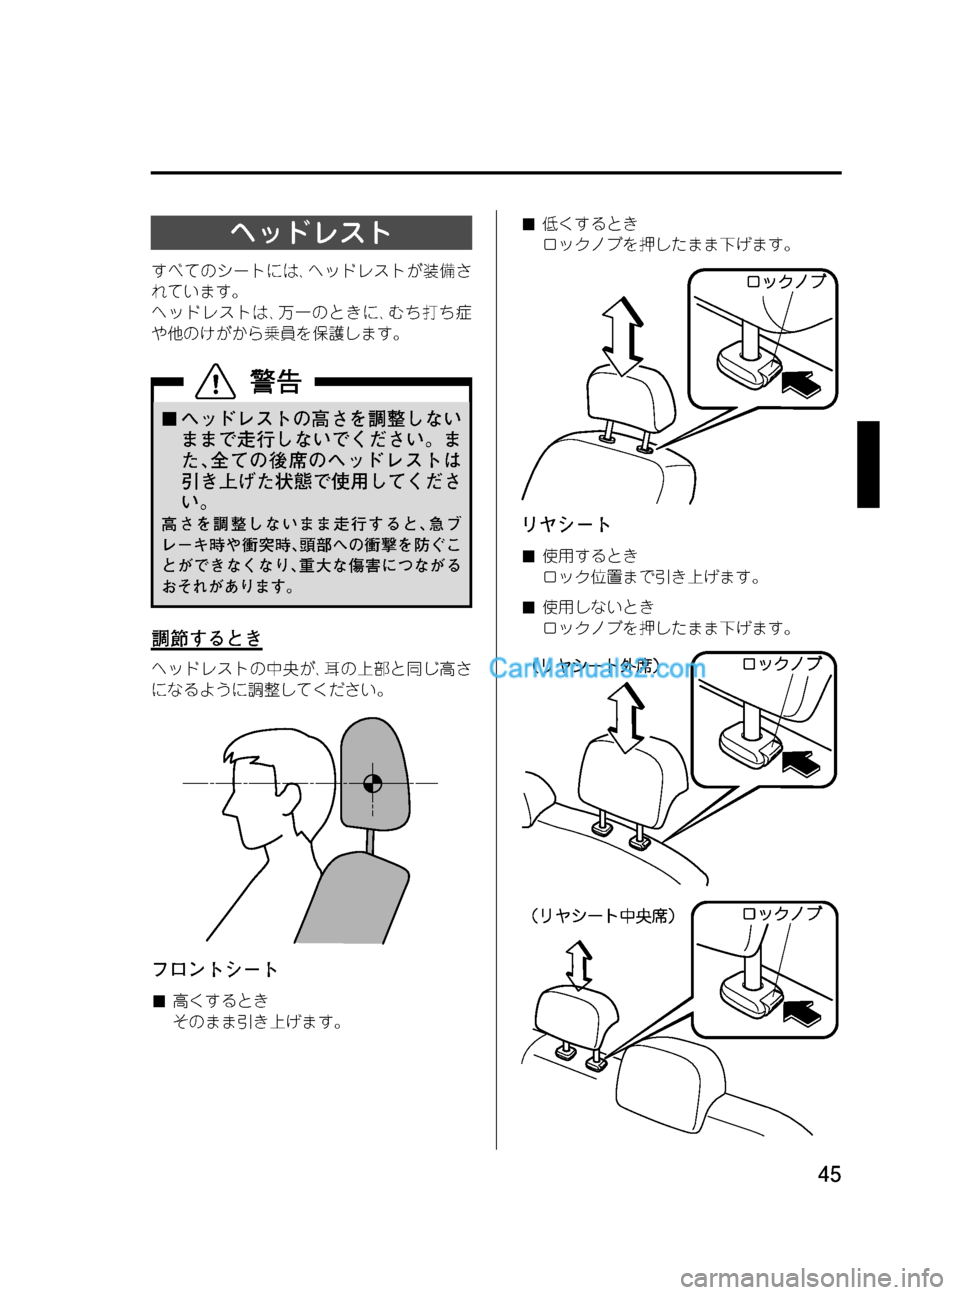 MAZDA MODEL VERISA 2007  ベリーサ｜取扱説明書 (in Japanese) Black plate (45,1)
ヘッドレスト
すべてのシートには､ヘッドレストが装備さ
れています。
ヘッドレストは､万一のときに､むち打ち症
や他のけがから